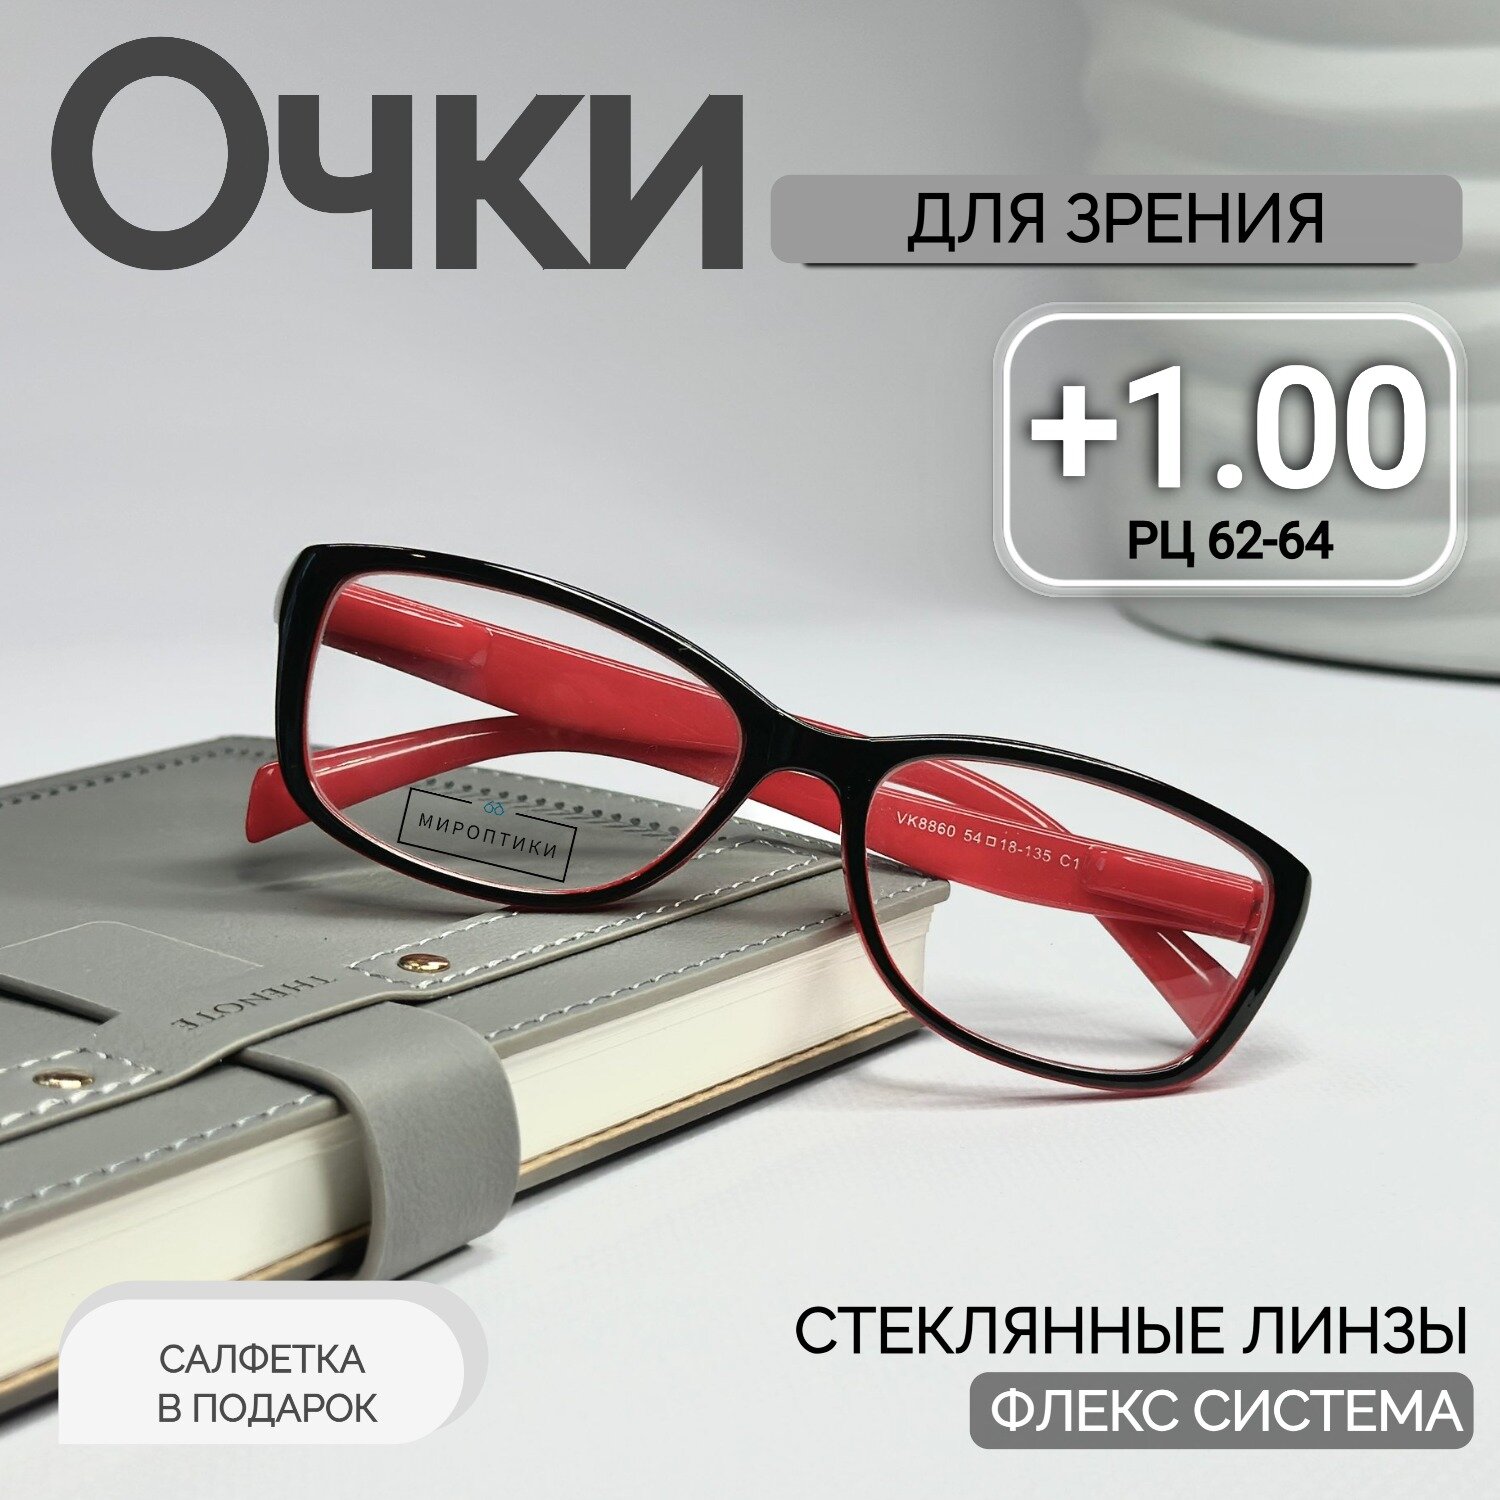 Готовые очки для зрения Fedrov 8860 C1 стеклянные для чтения с диоптриями +1.00